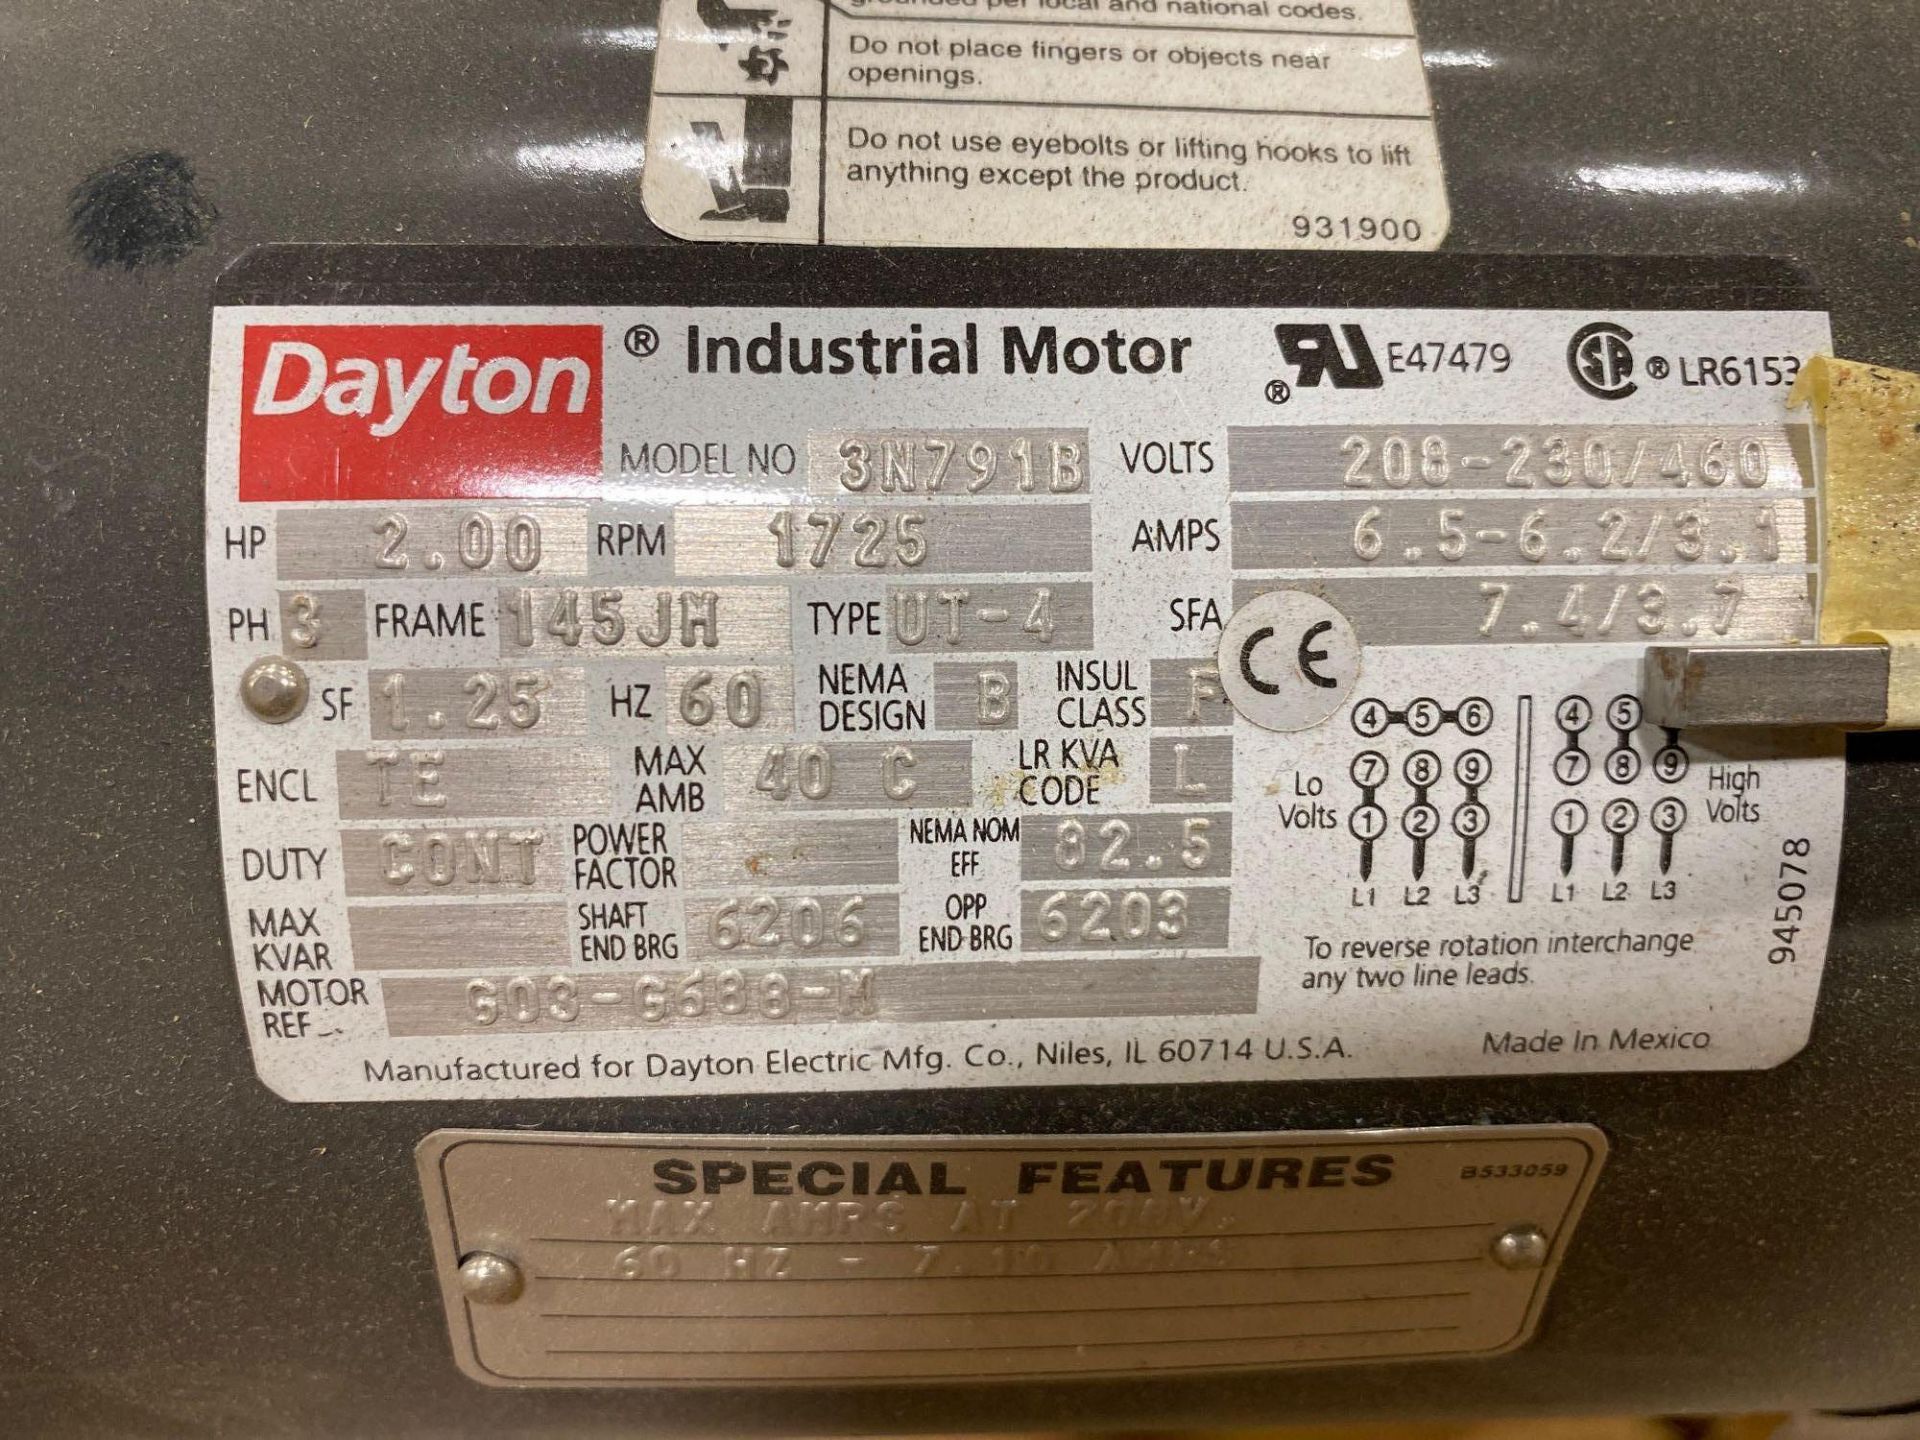 Dayton 2HP, 3PH Electric Motor - Image 3 of 3